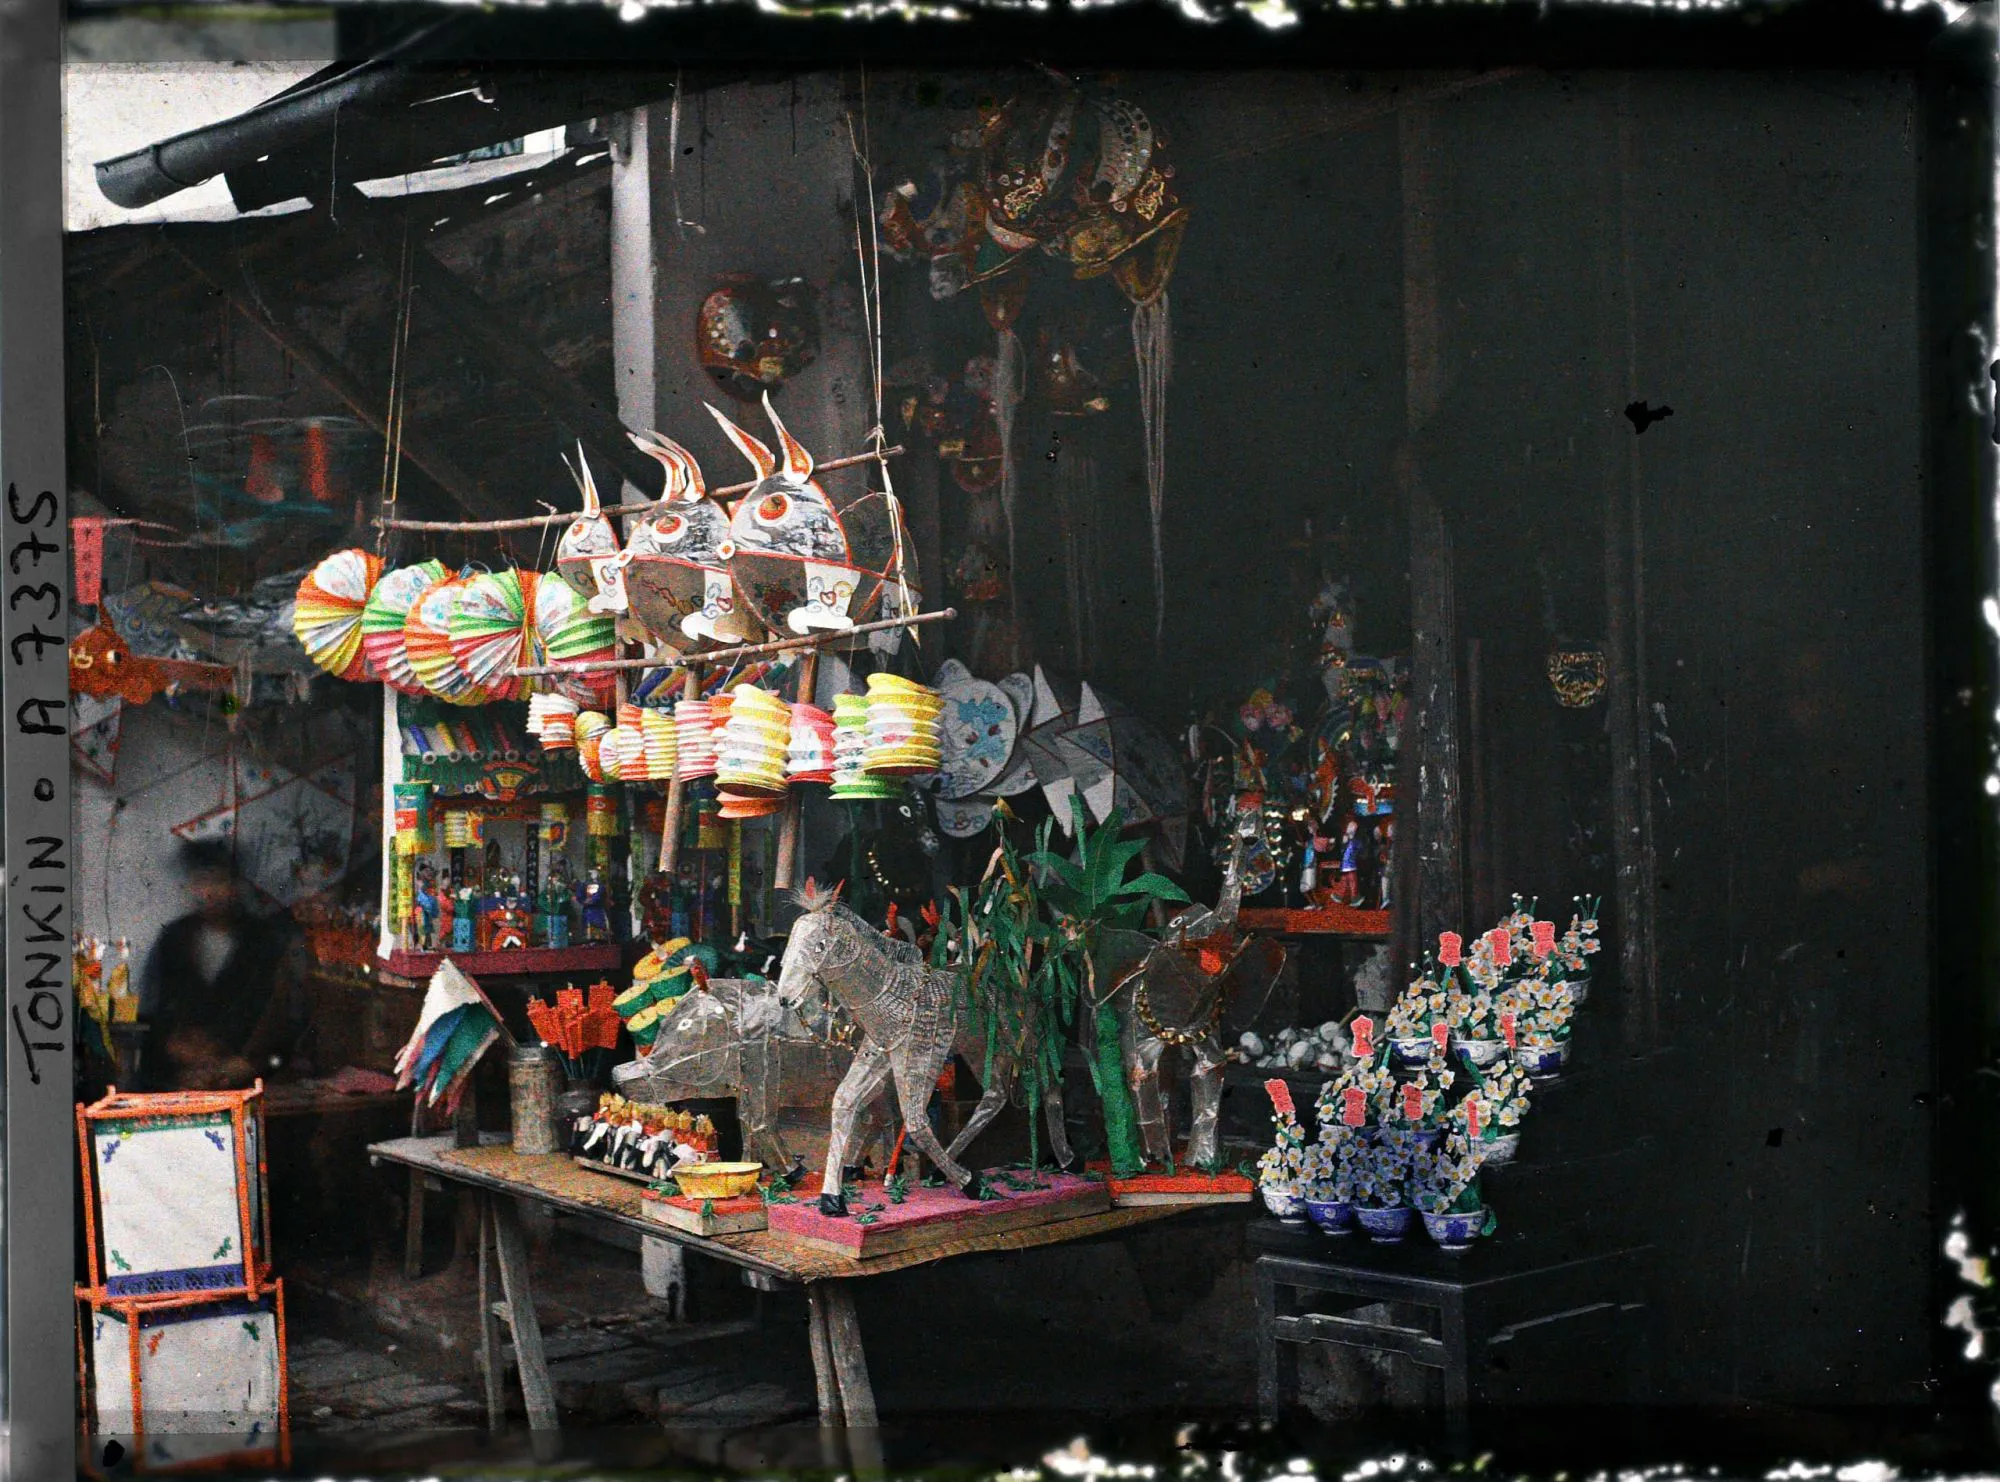 Bảo tàng chứa đến 1.382 tấm ảnh về Việt Nam: Trung thu Hà Nội đầy sắc màu - Ảnh 8.